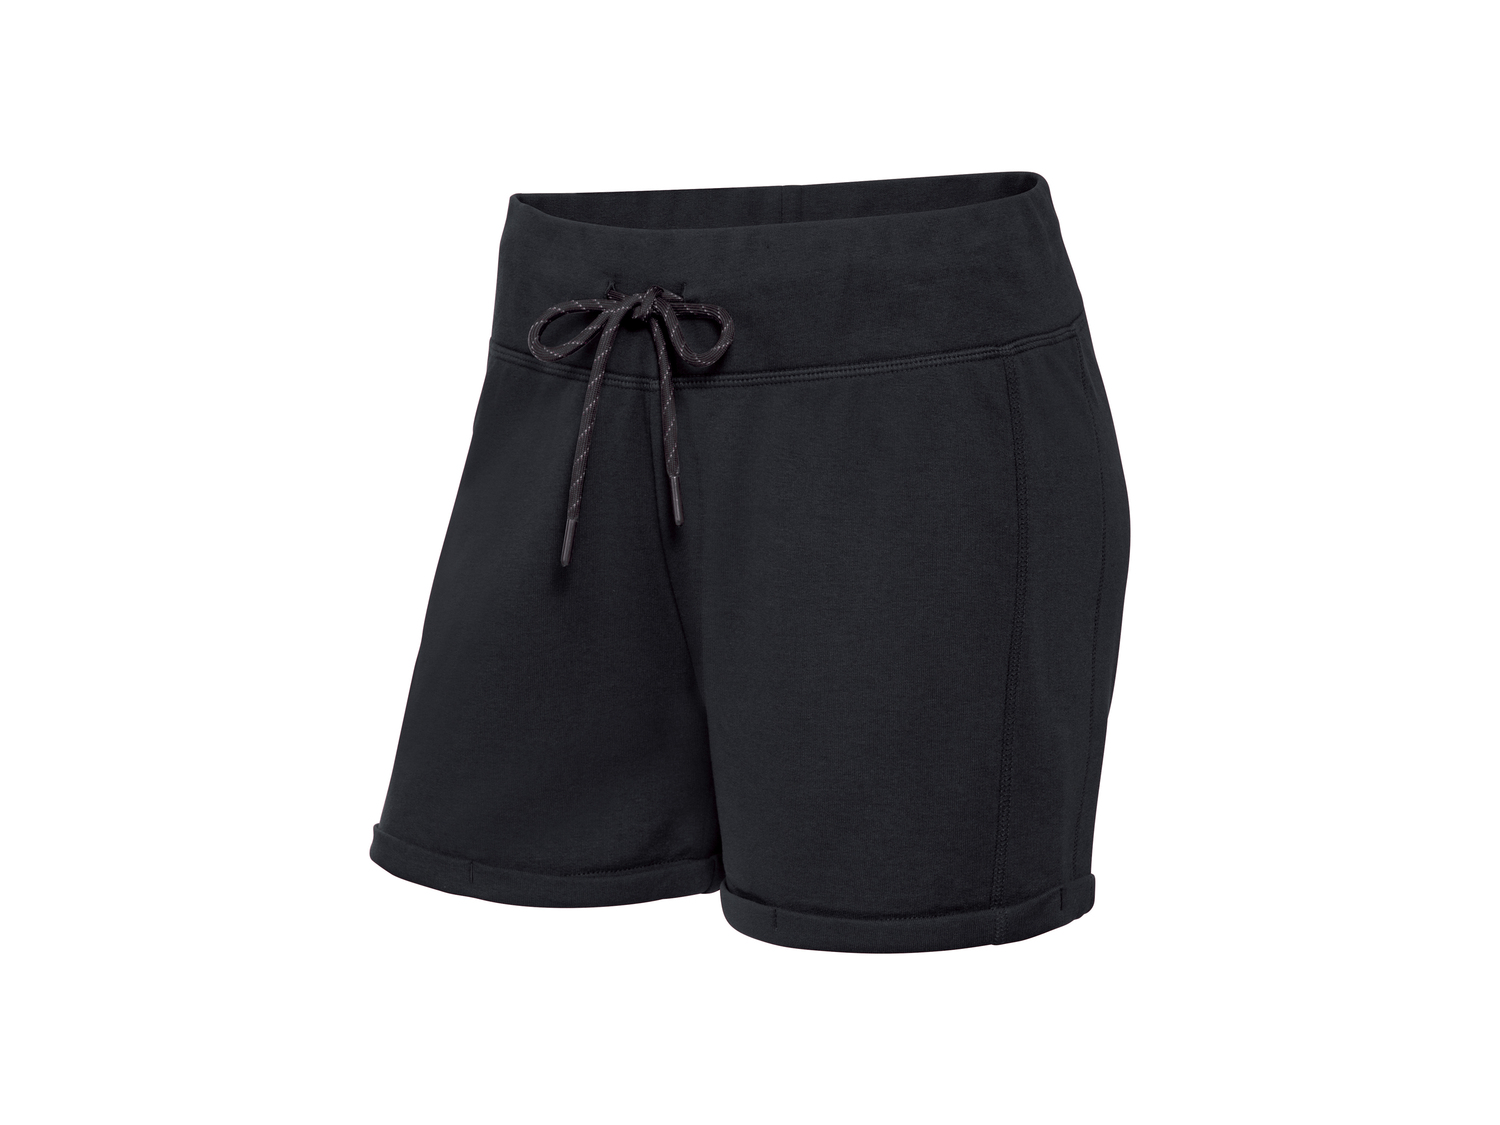 Shorts sportivi da donna Crivit, prezzo 5.99 &#8364; 
Misure: S-L
Taglie disponibili

Caratteristiche

- ...